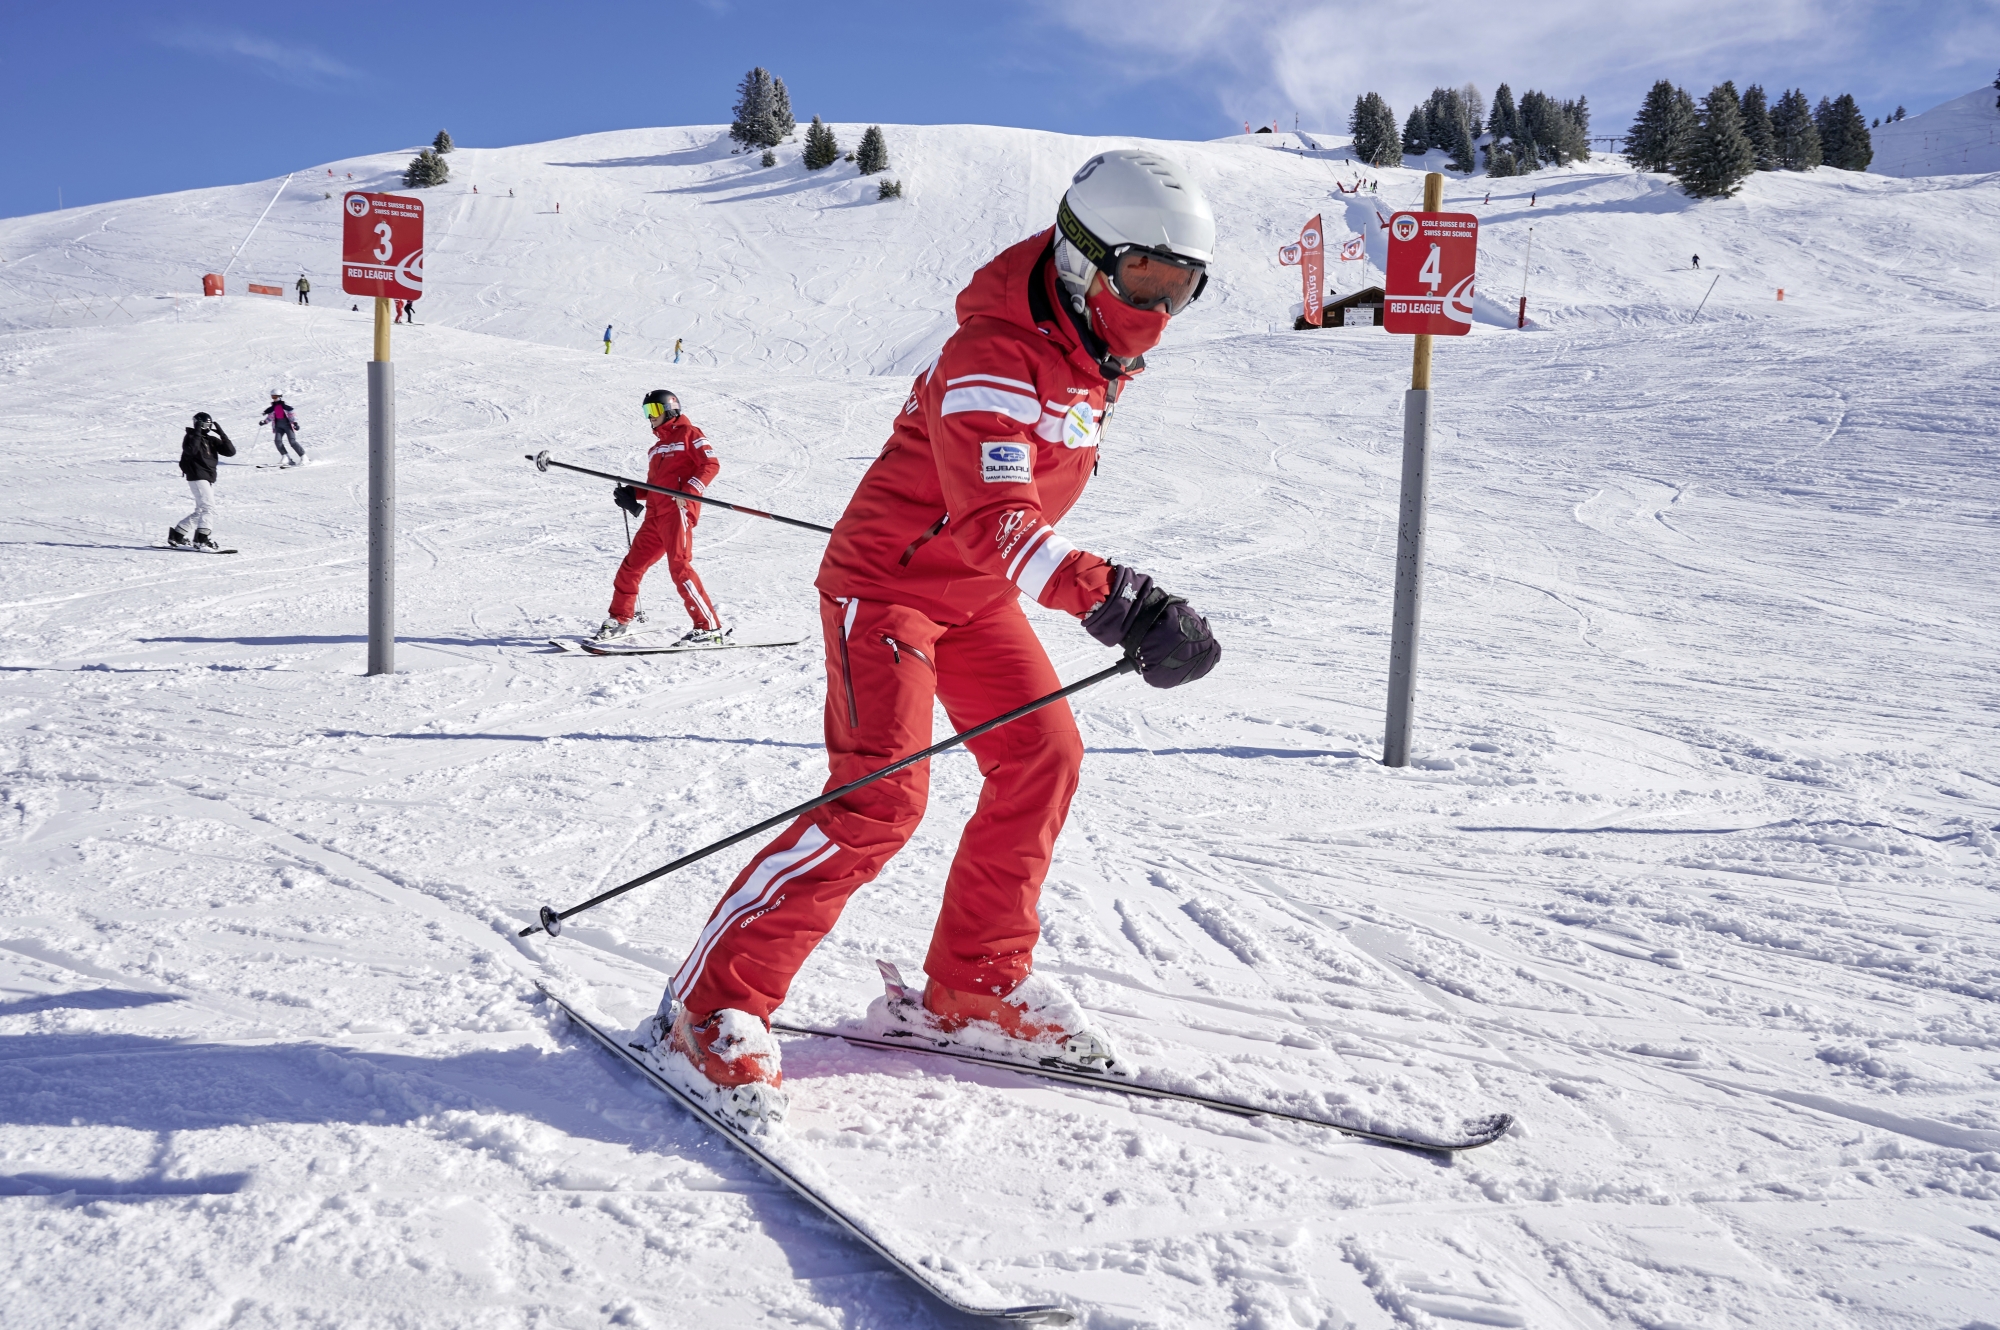 Reportage à l'école suisse de ski de Villars. Les monitrices et moniteurs de ski font face, dans un certain nombre de stations, a des difficultés à avoir des élèves cette année.

photo: Lib / Charles Ellena, Bretaye (au-dessus de Villars-sur-Ollon) le 09.02.2021